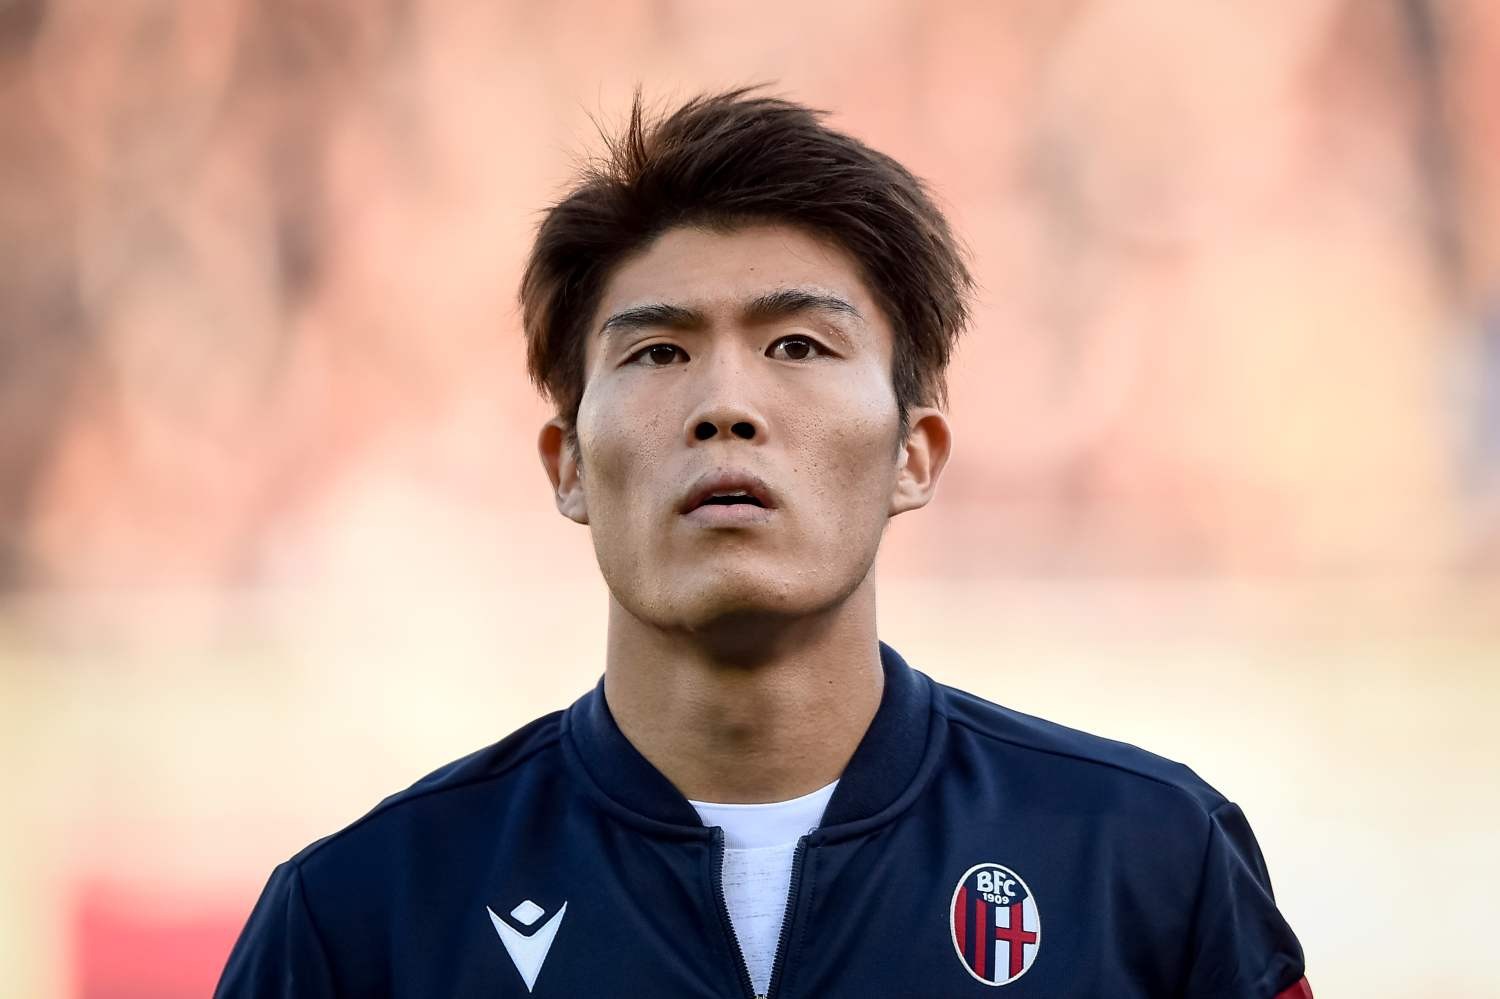 Arsenal reaguje na plotki w sprawie przyszłości Takehiro Tomiyasu